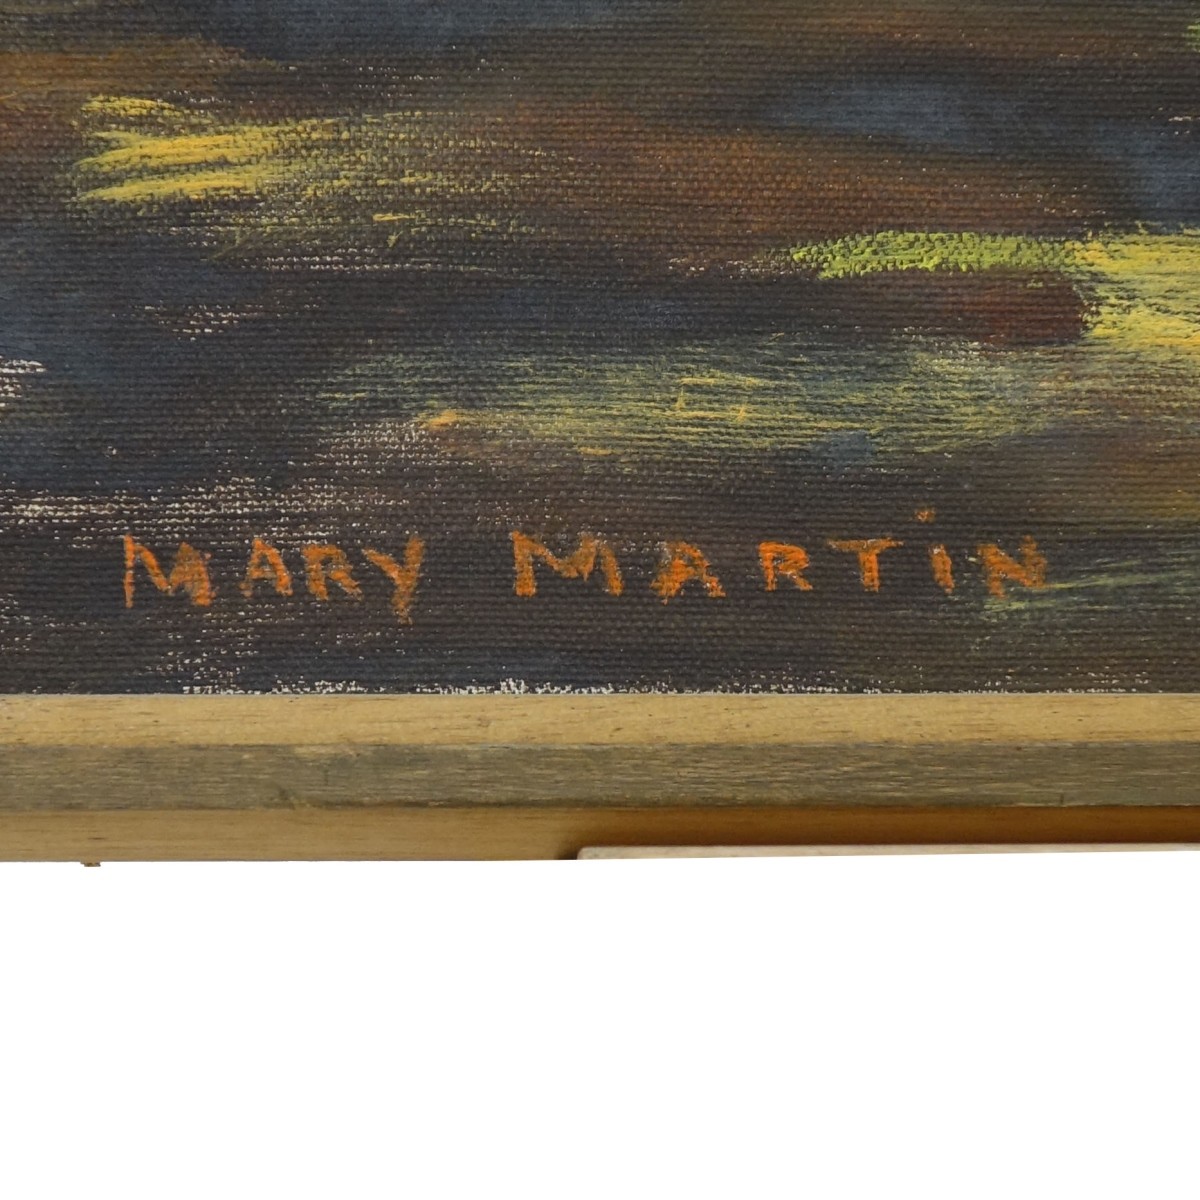 Mary Martin (20th C.)